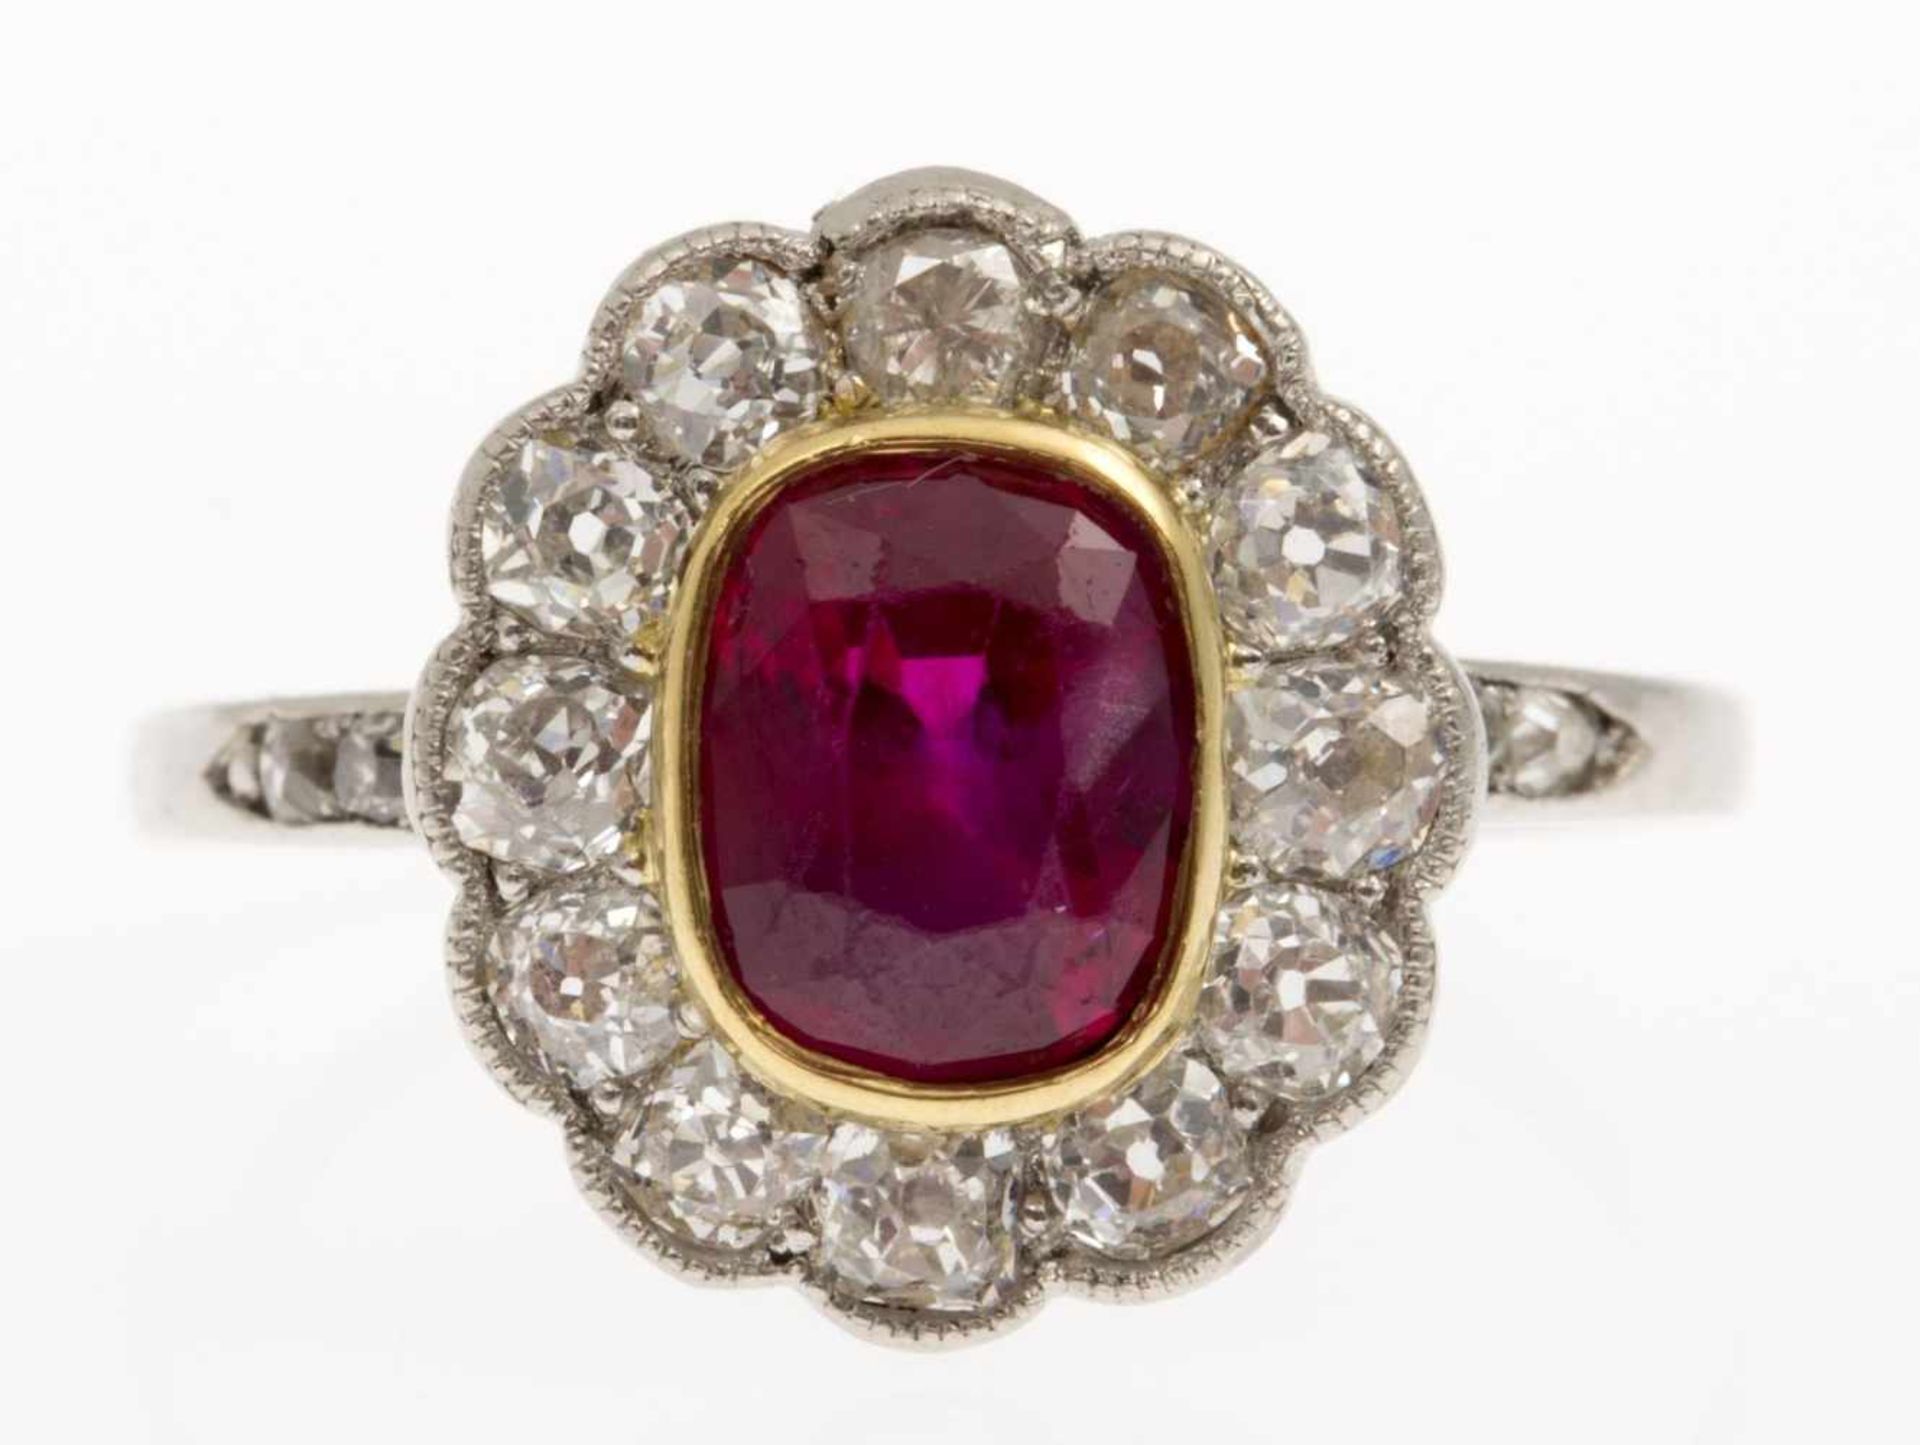 Rubin-Diamant-RingWeißgold und Gelbgold 585 (geprüft). Ringkopf ausgefasst mit ovalem Rubin,